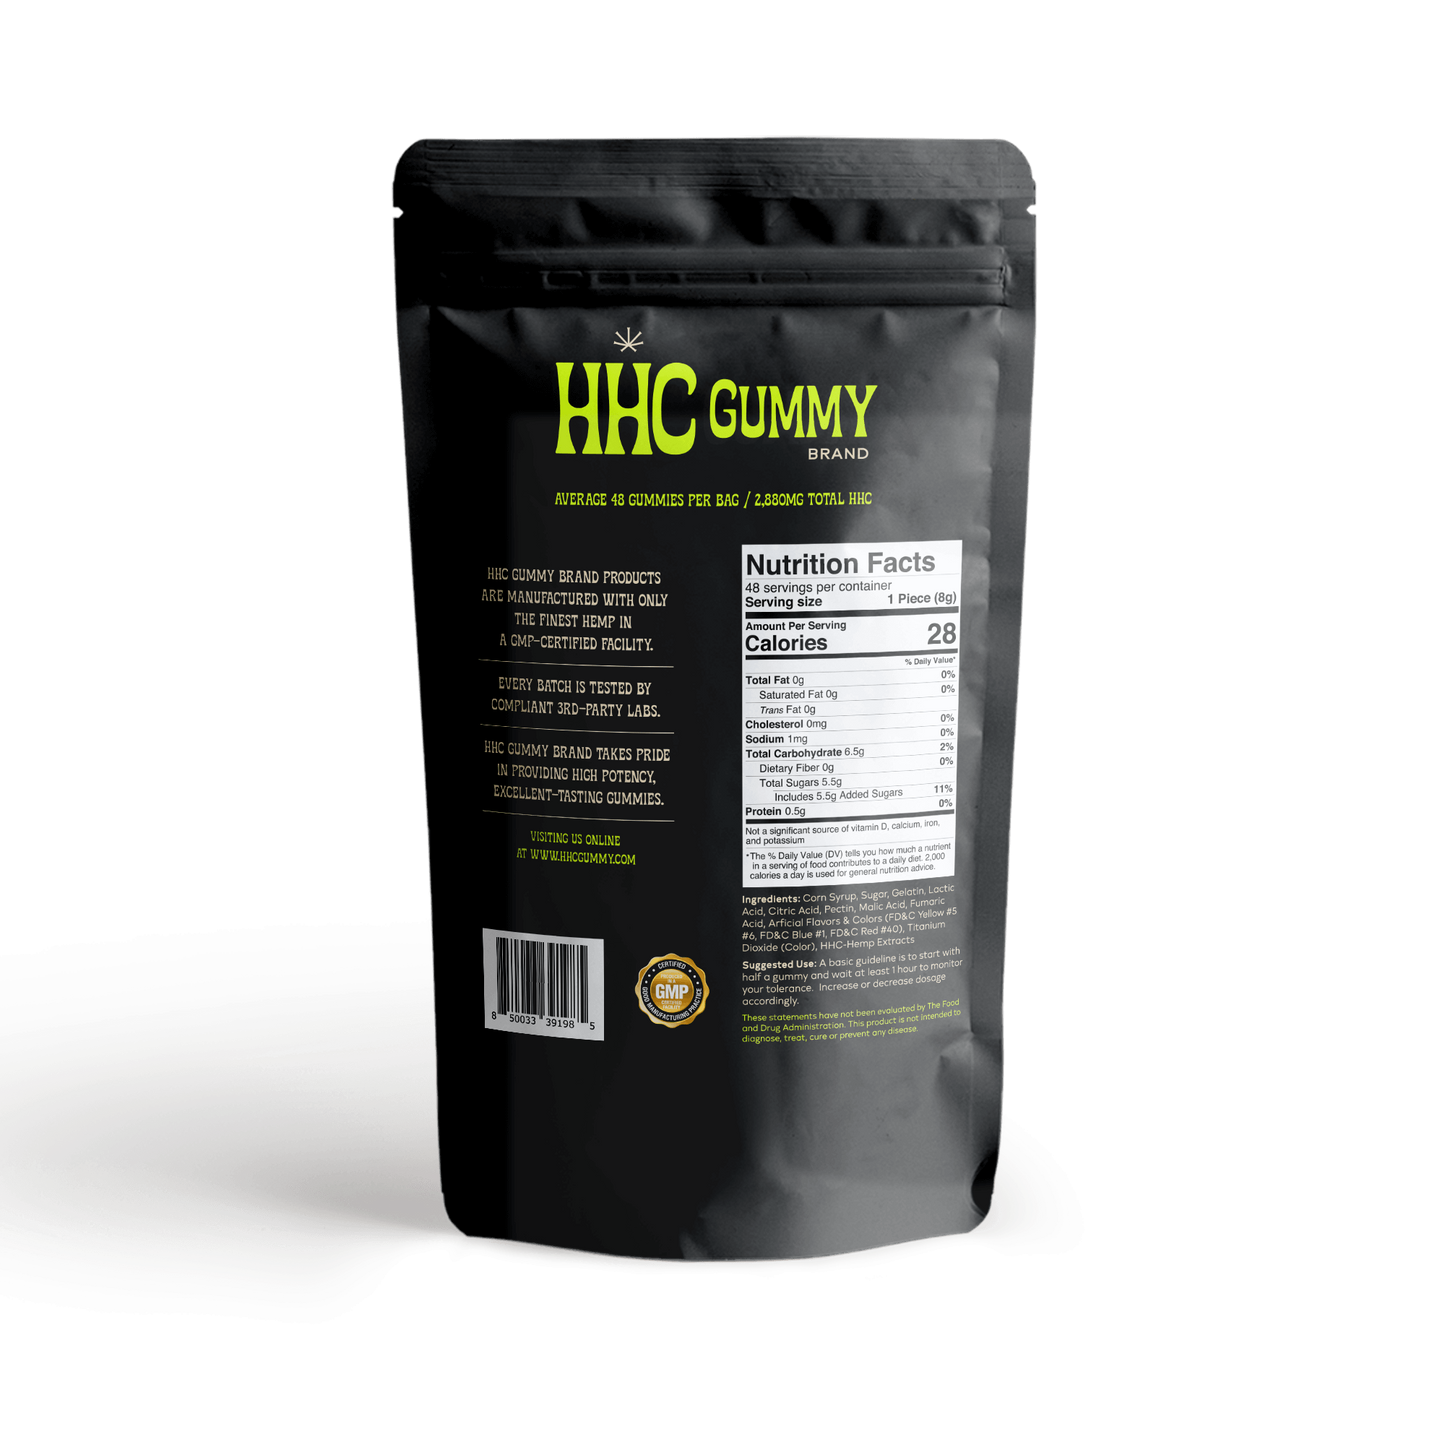 hhc wholesale - hhc bulk wholesale - wholesale hhc - best HHC gummies - best hhc products- best hhc edibles- best hhc-hhc weed-hhc edibles-hhc near me-hhc products- hhc high-hhc hemp-thc hhc-buy hhc-hhc cannabis-hhc cbd-hhc gummies - 1000mg hhc gummies-hhc gummy-best hhc gummies-premium hhc gummies-injoyextractswholesale-apple hhc gummies-hhc apple rings-hhc apple ring gummies